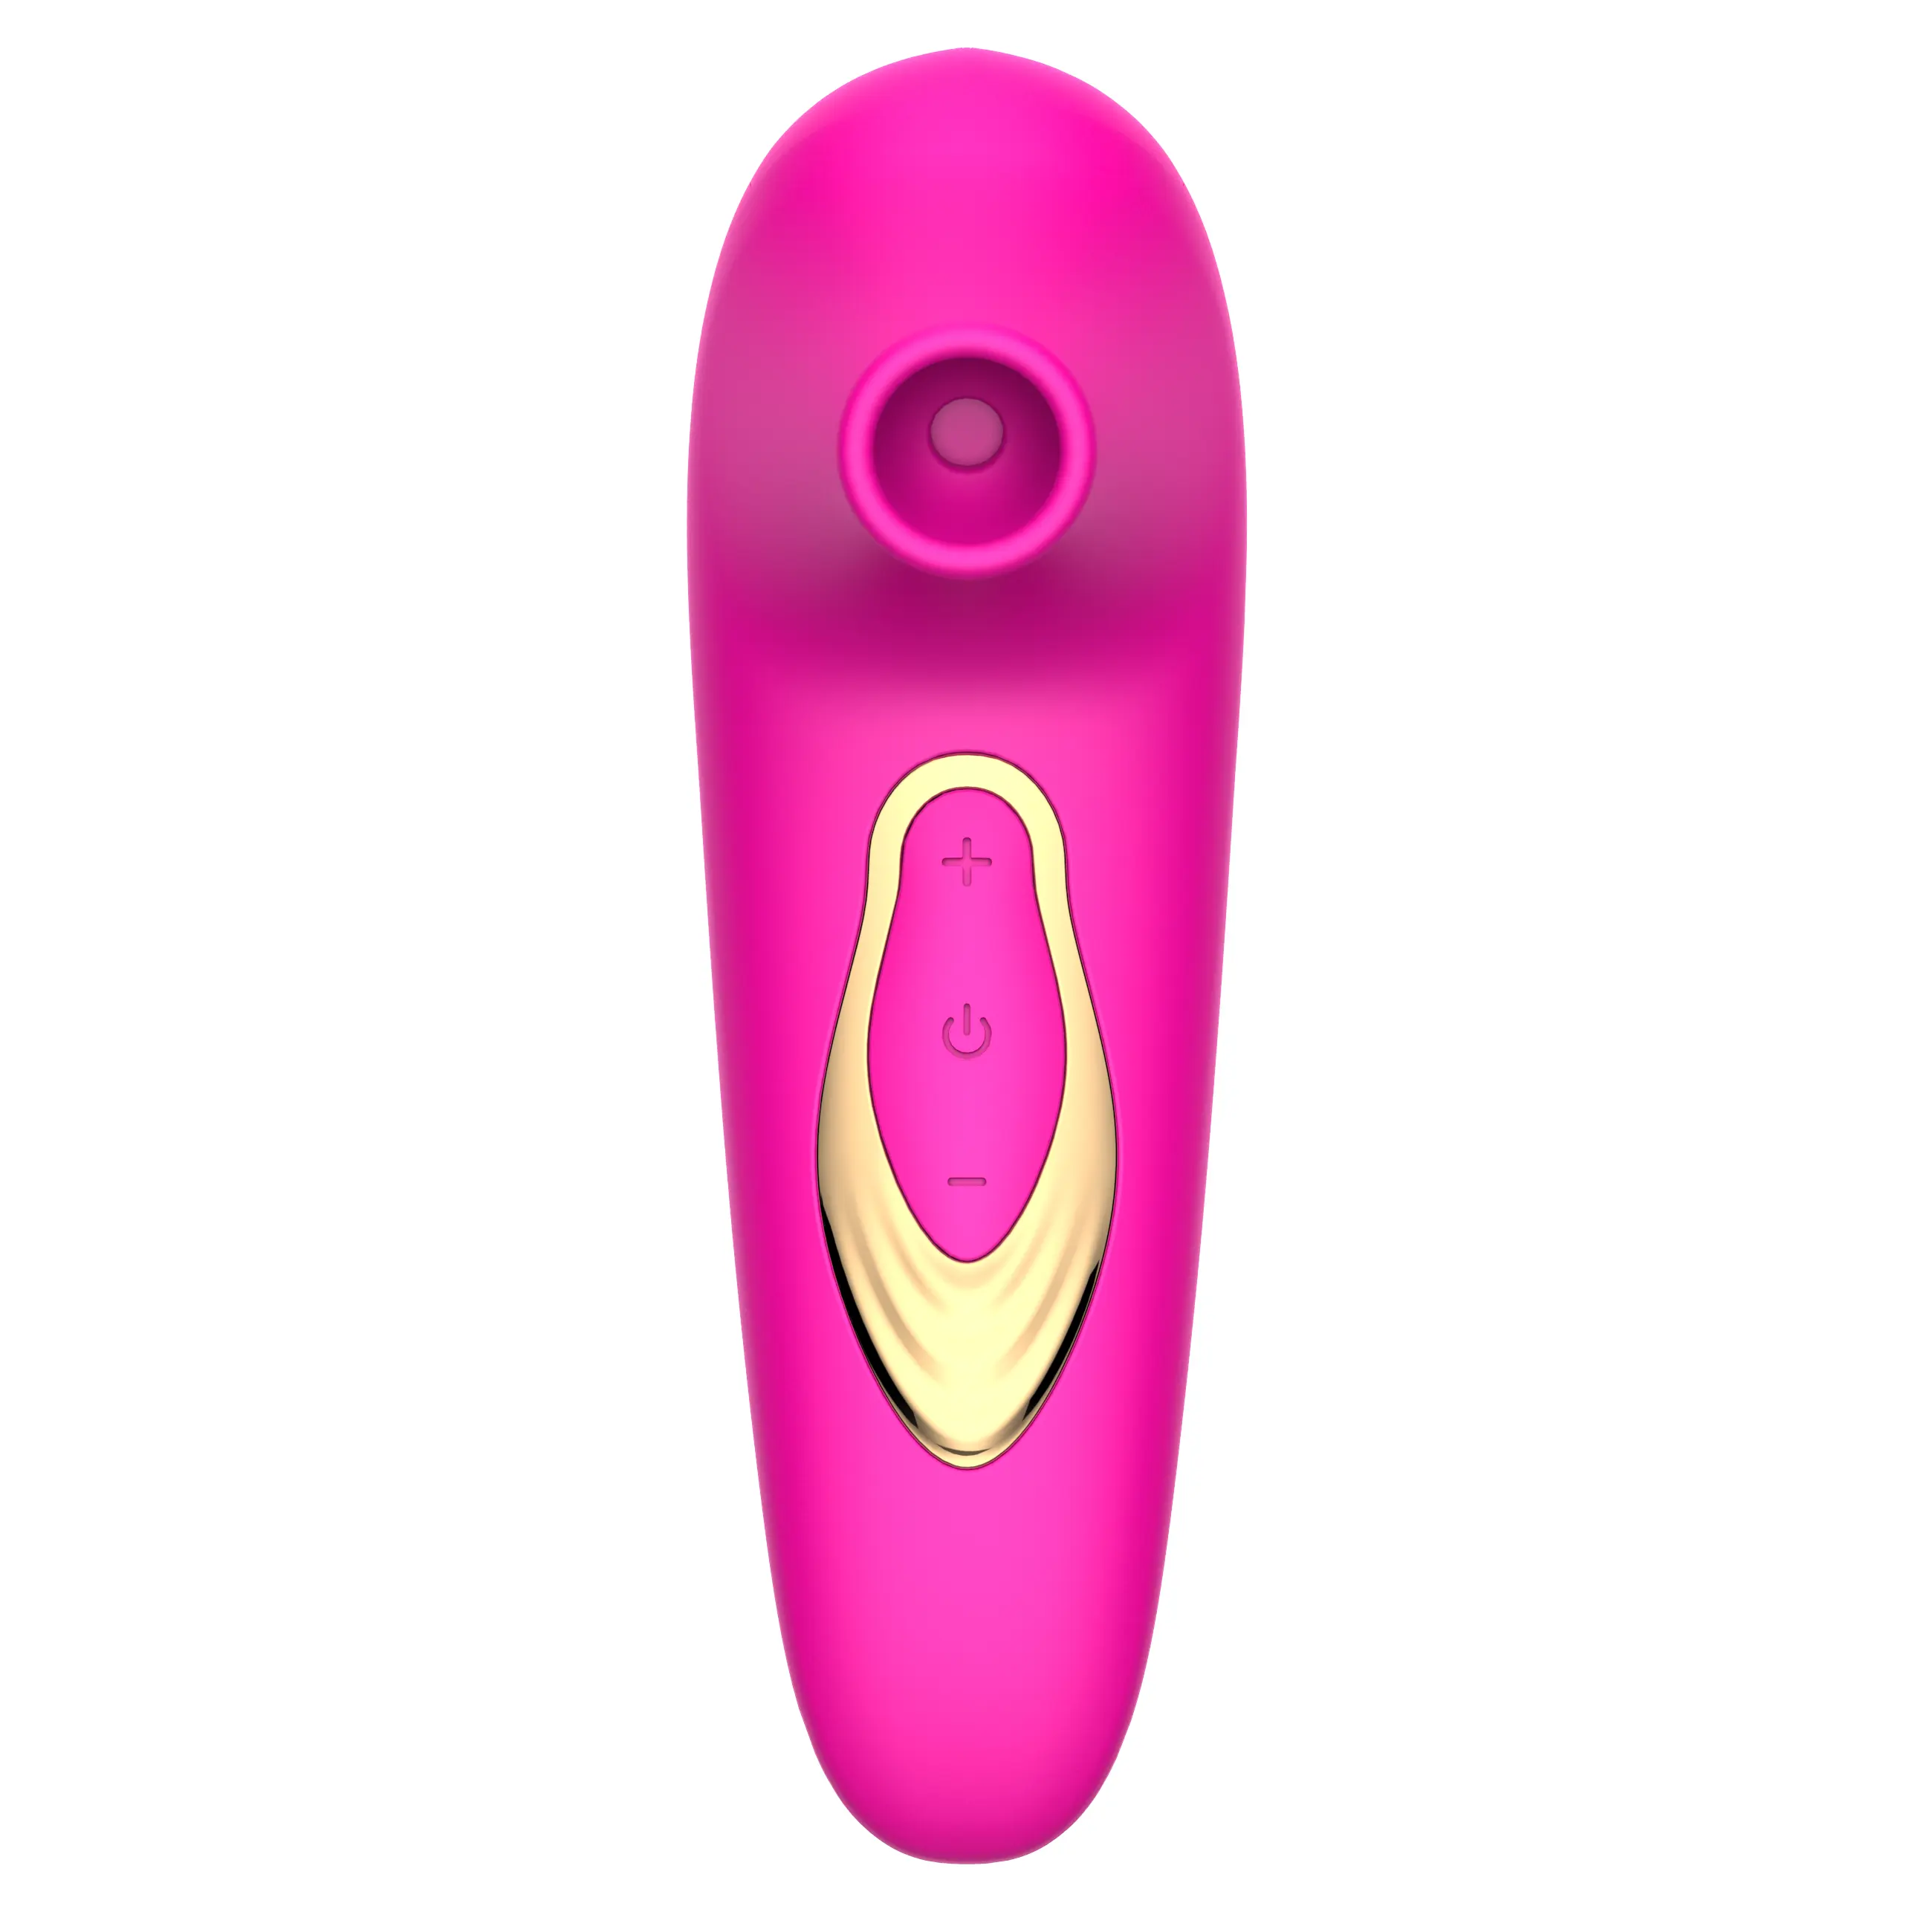 Venta caliente 5 Frecuencia Vagina Pezón Succionador Vibración Estimulador Juguetes sexuales para mujeres